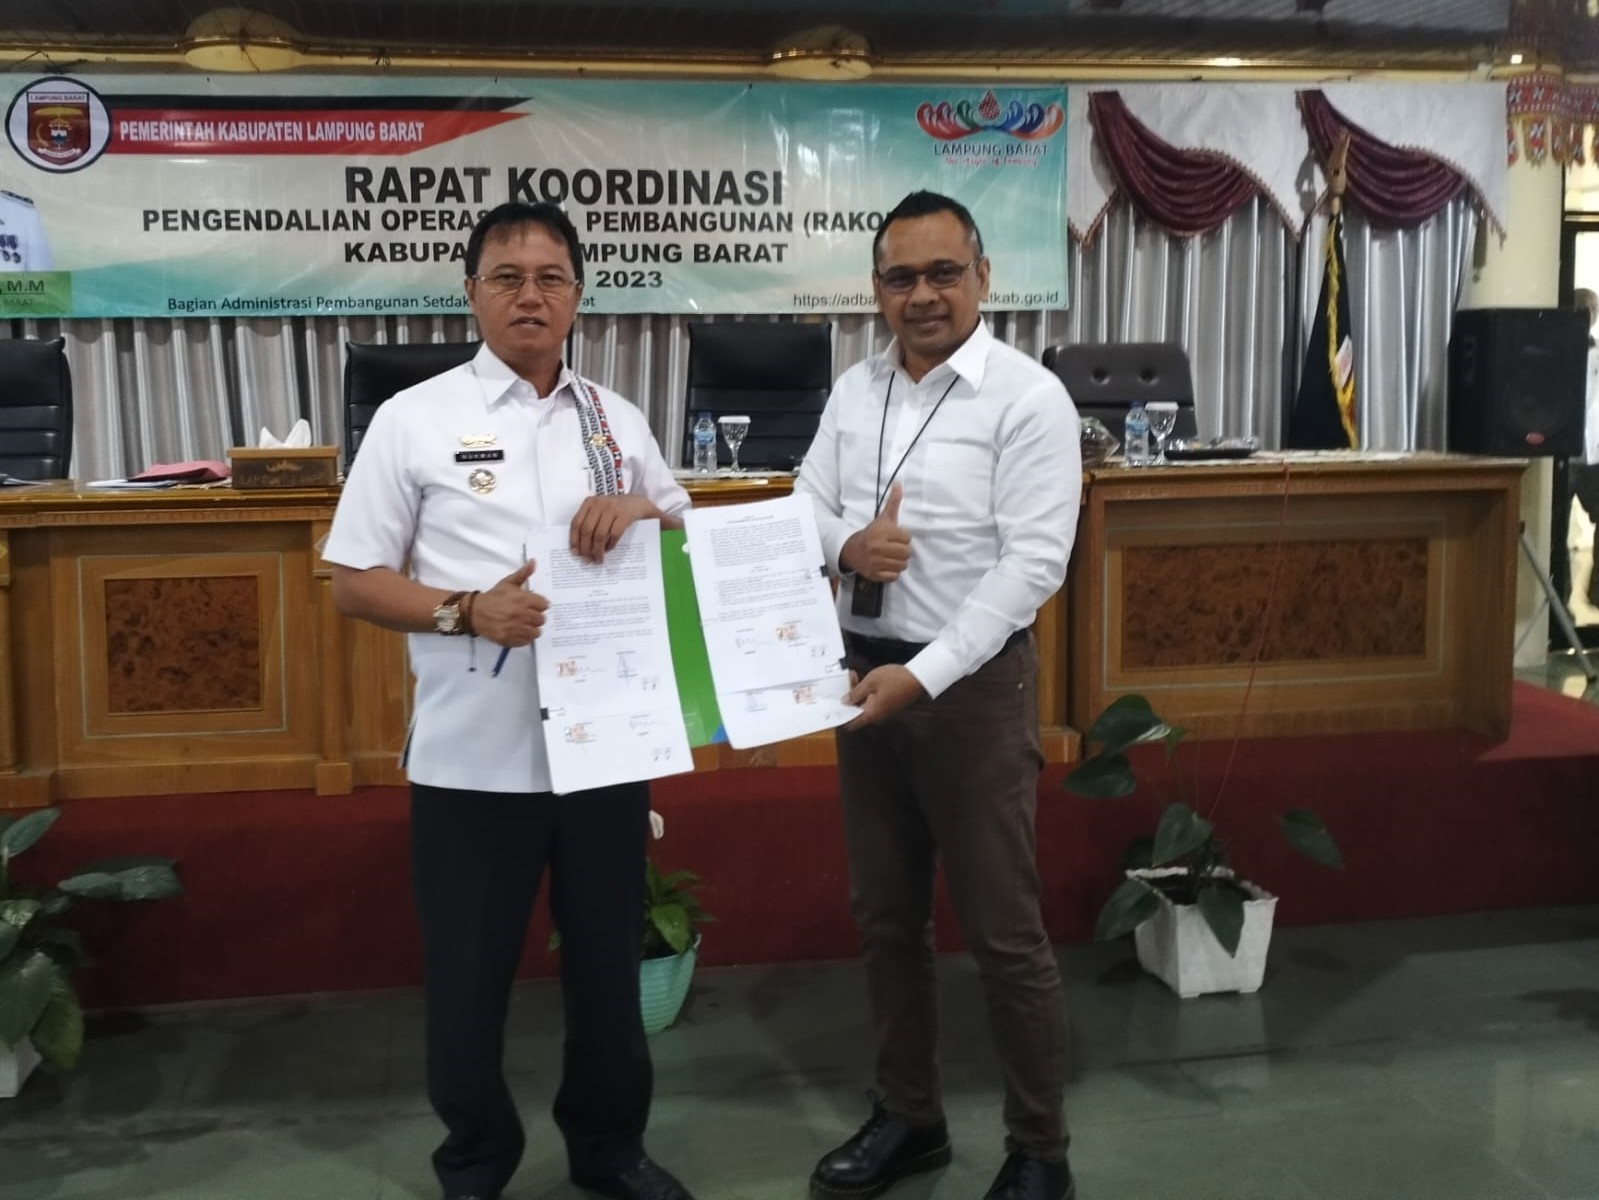 Pemkab Lampung Barat-BPJS Ketenagakerjaan Tandatangani MoU, Sekaligus Serahkan Santunan Kematian-Kartu